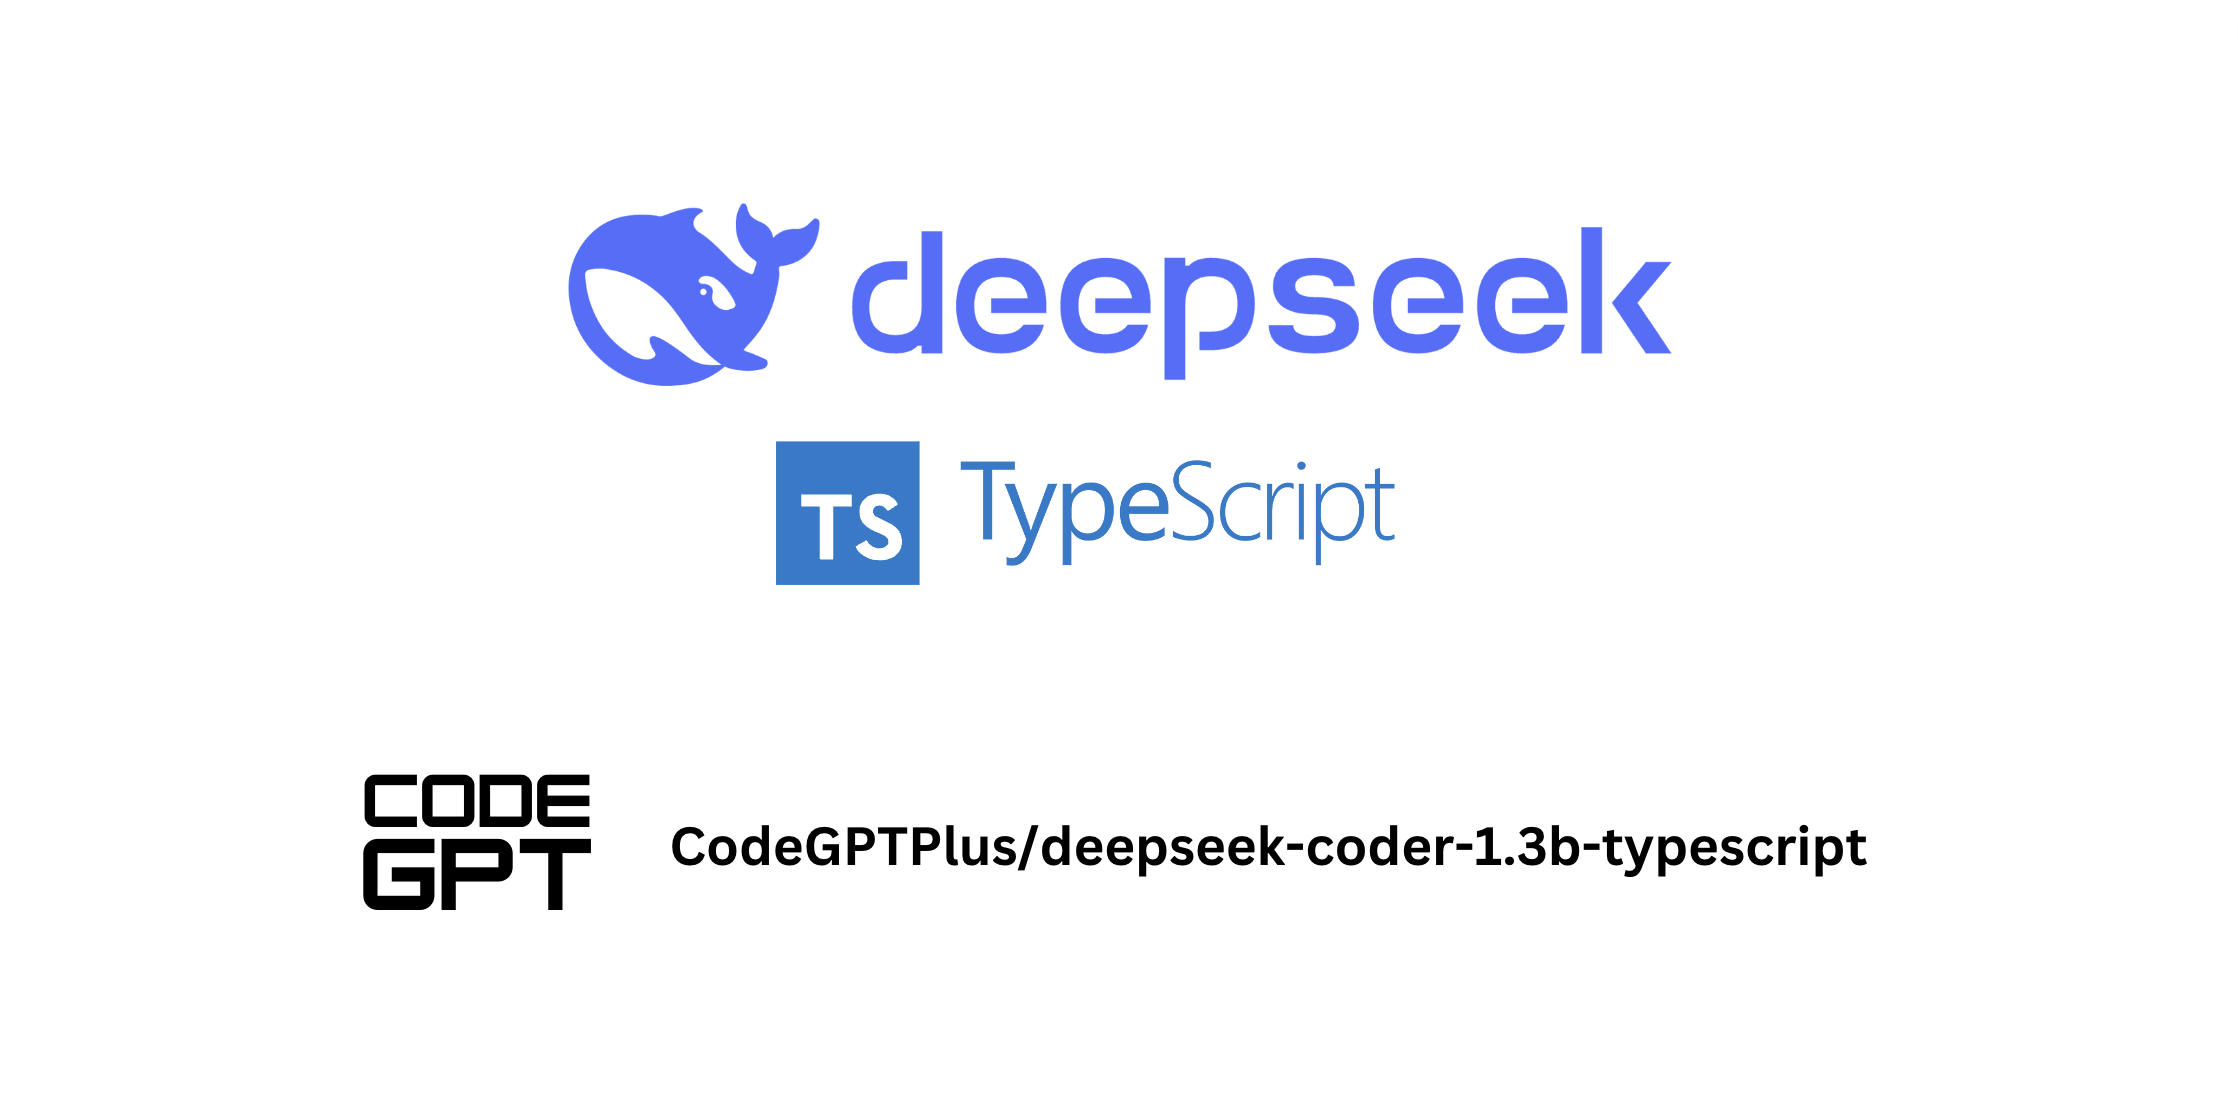 CodeGPT: DeepSeek Coder - Typescript